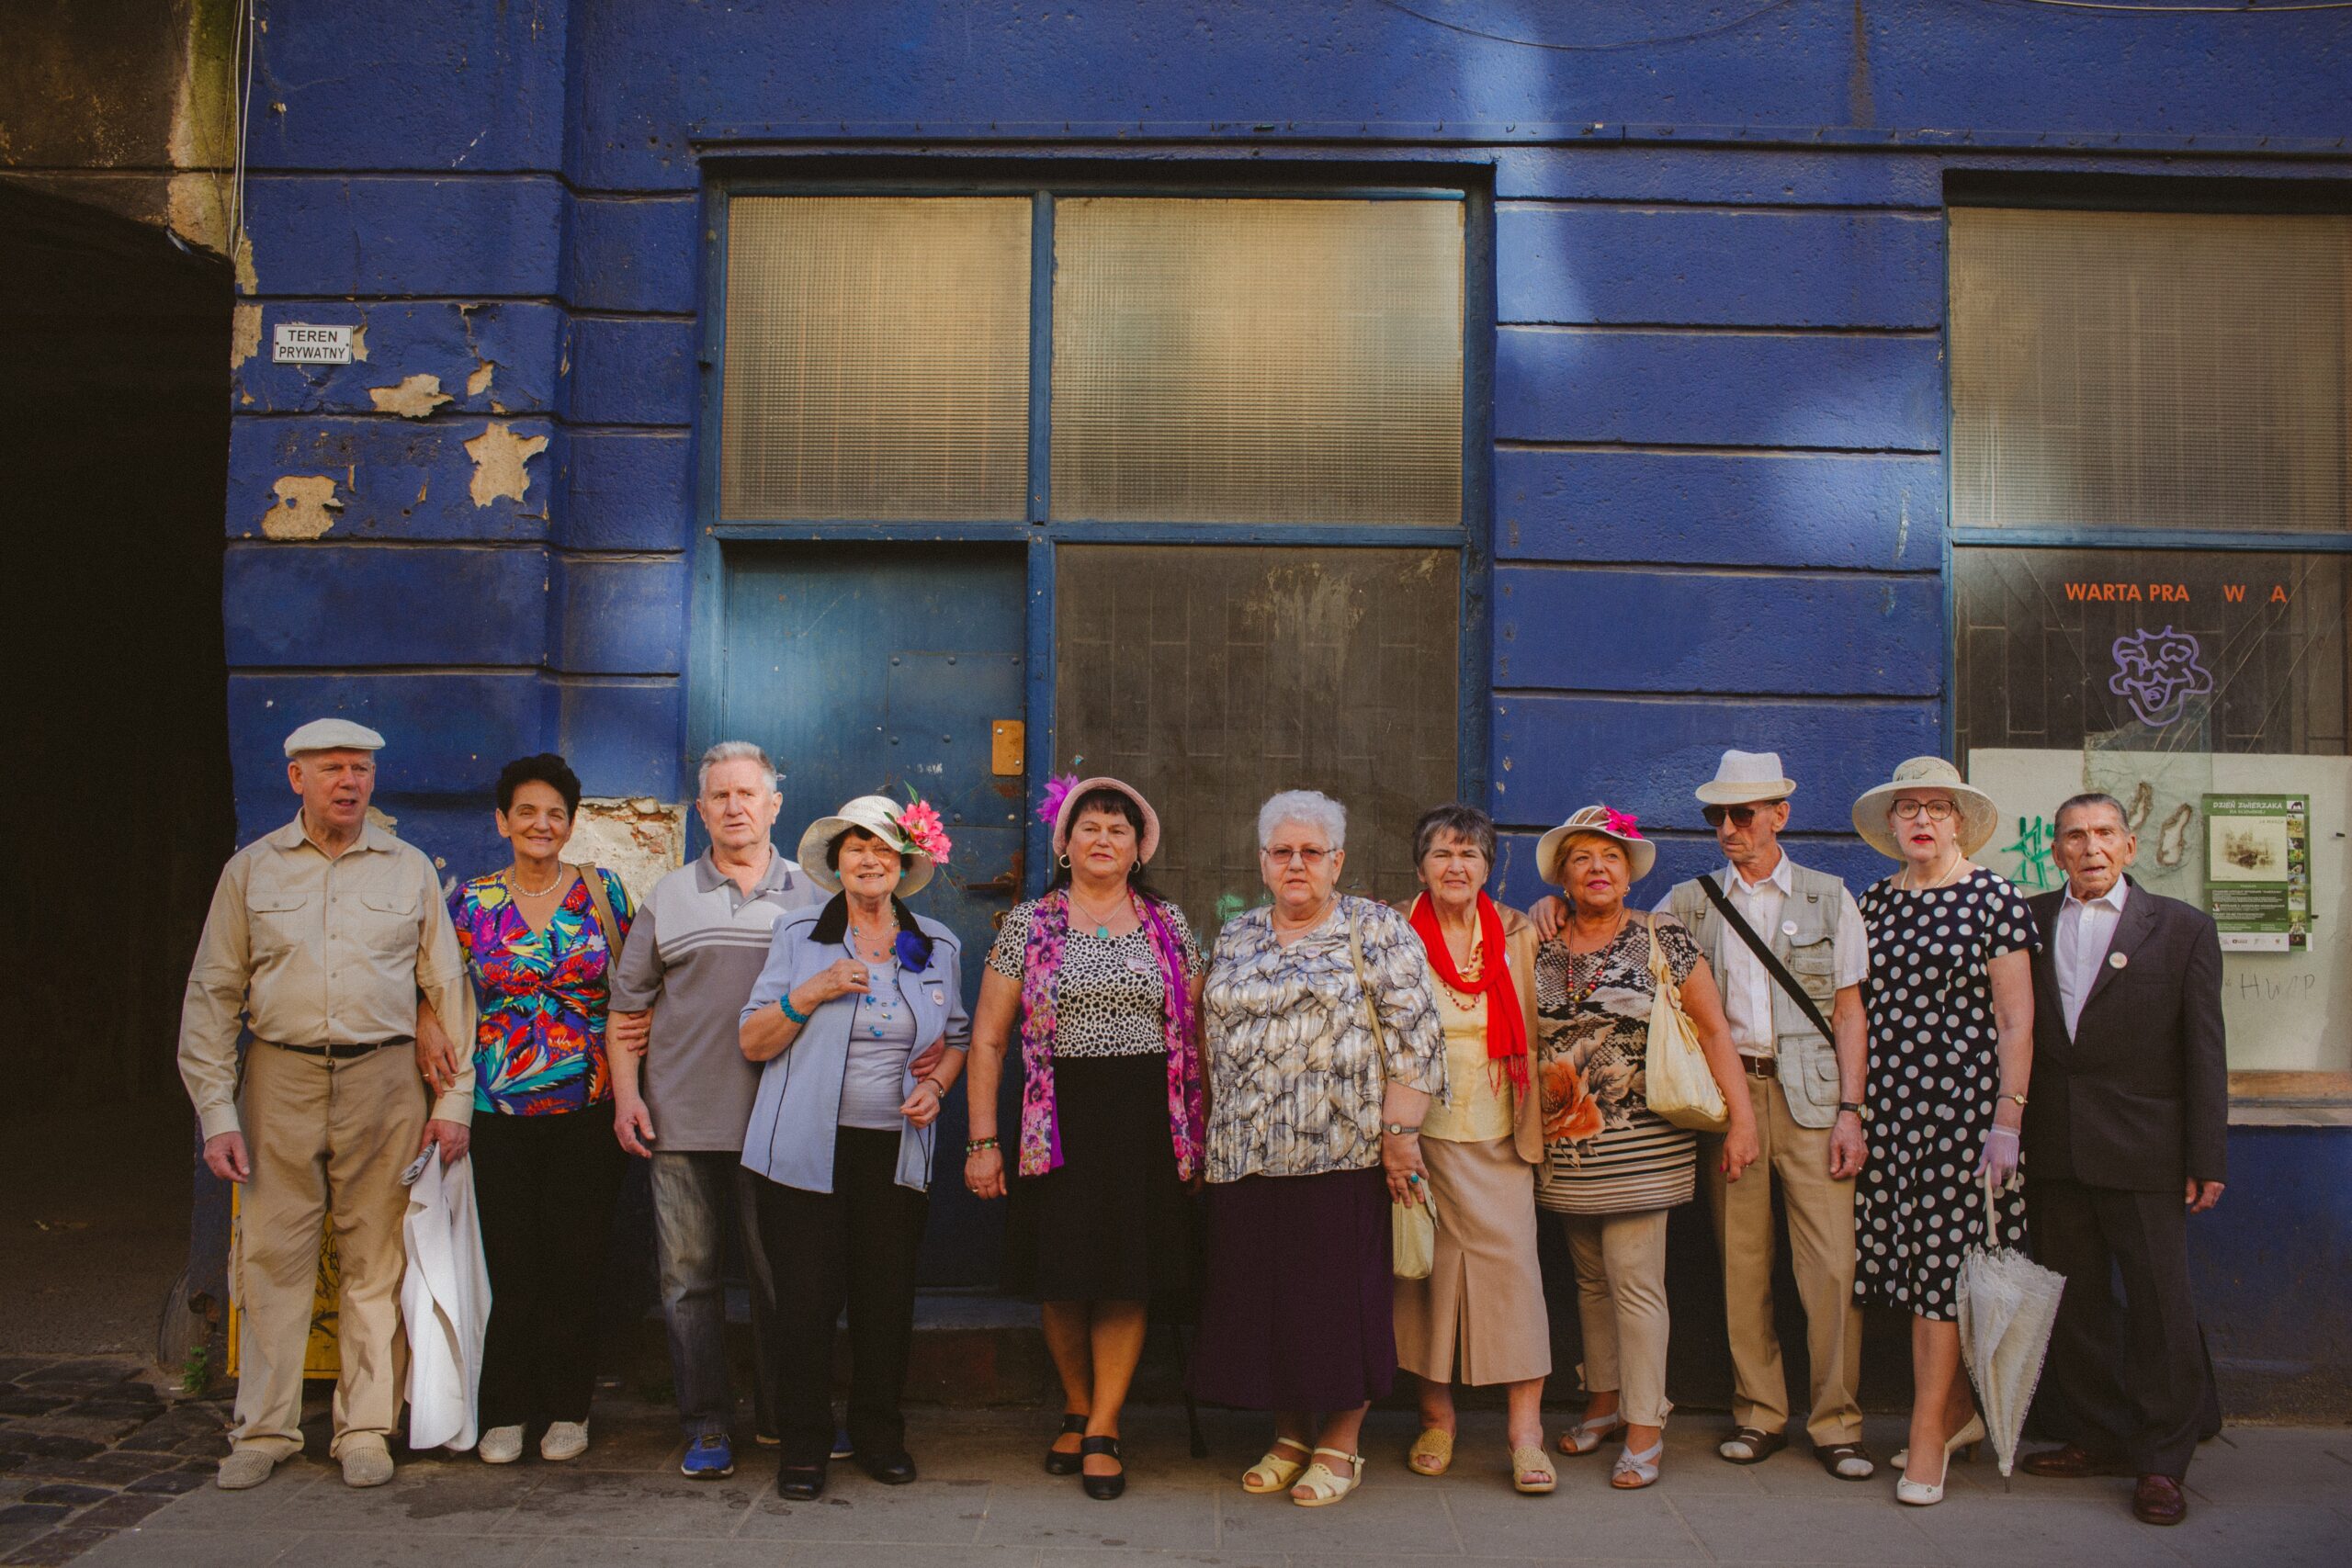 Zdjęcie. Grupa osób w starszym wieku na tle budynku.